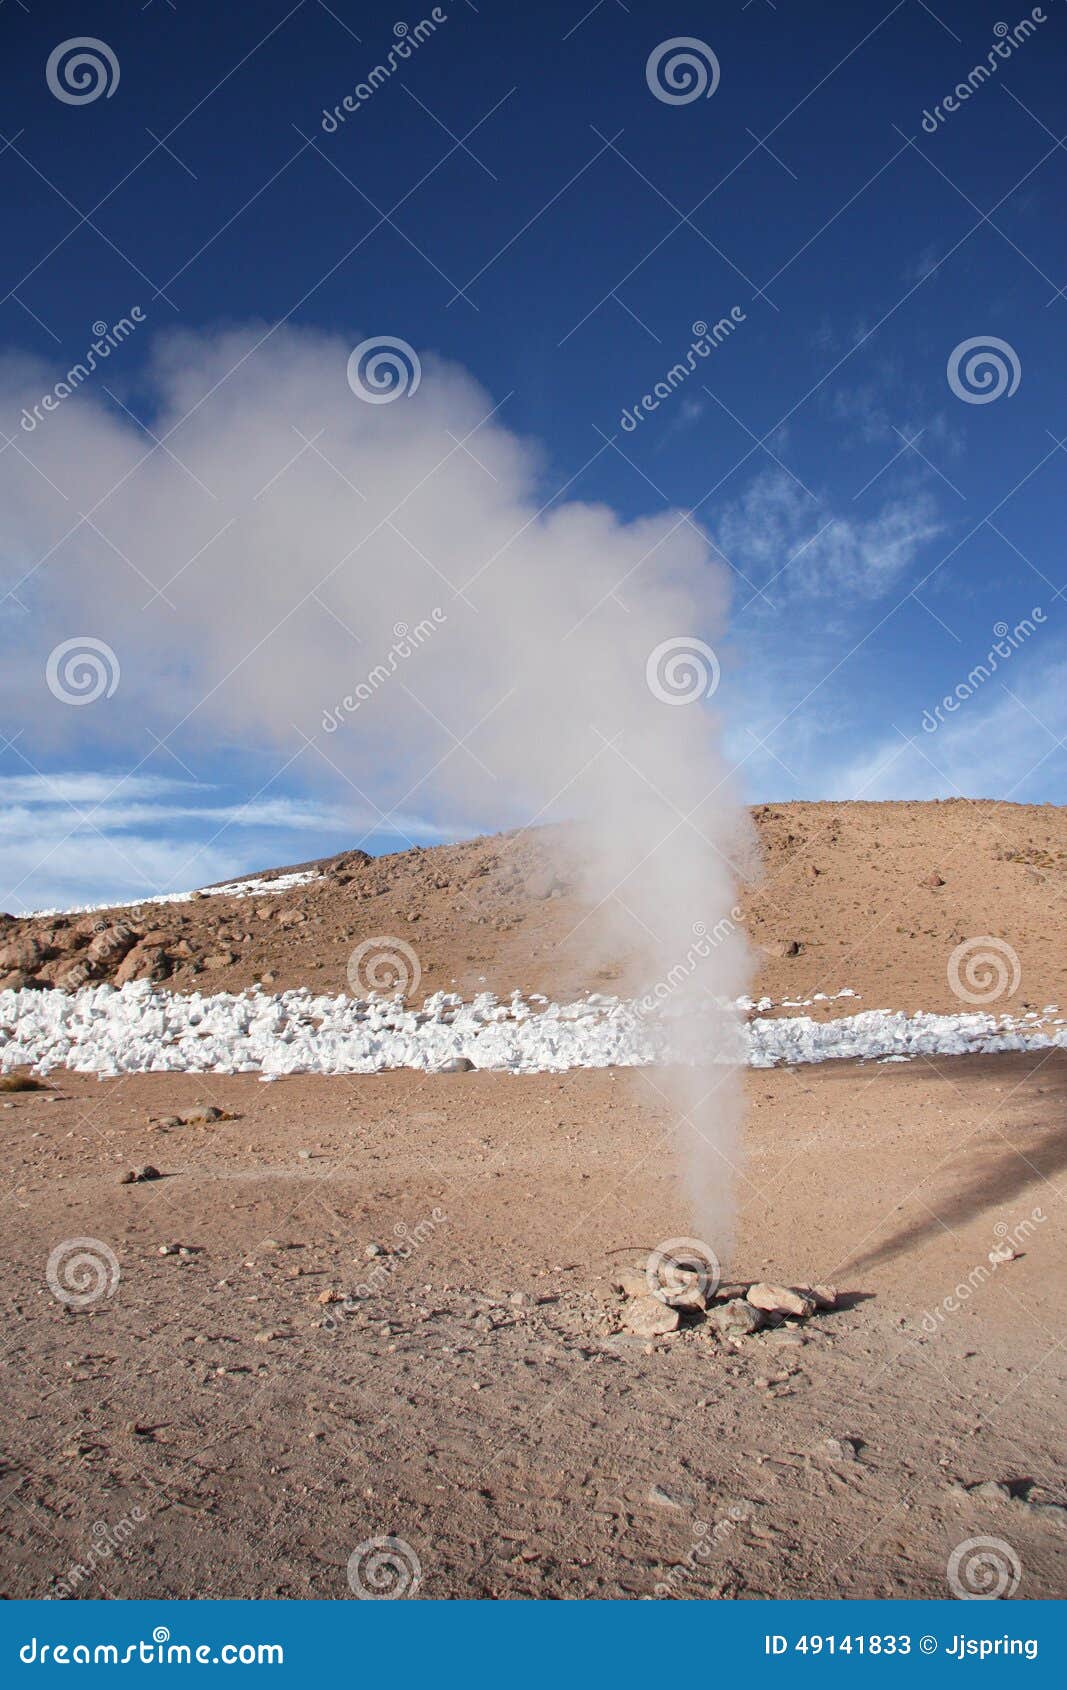 geyser in natural reserve eduardo avaroa in bolivia